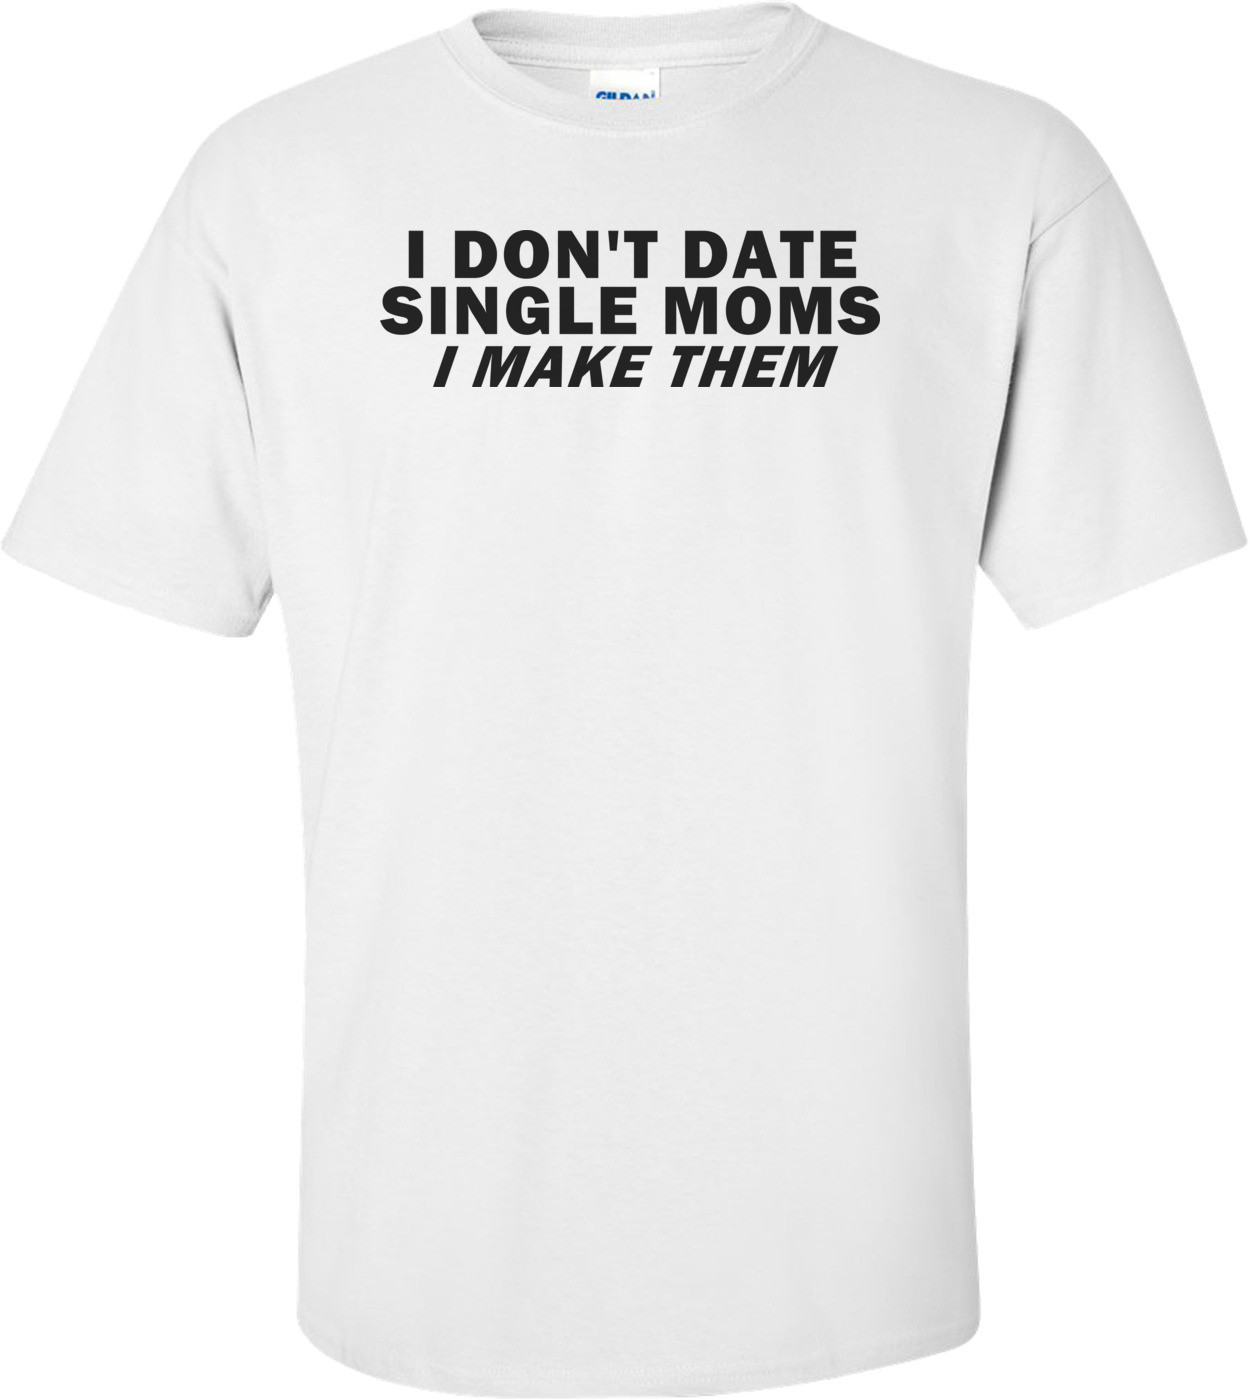 I Don't Date Single Moms, I Make Them Funny Shirt